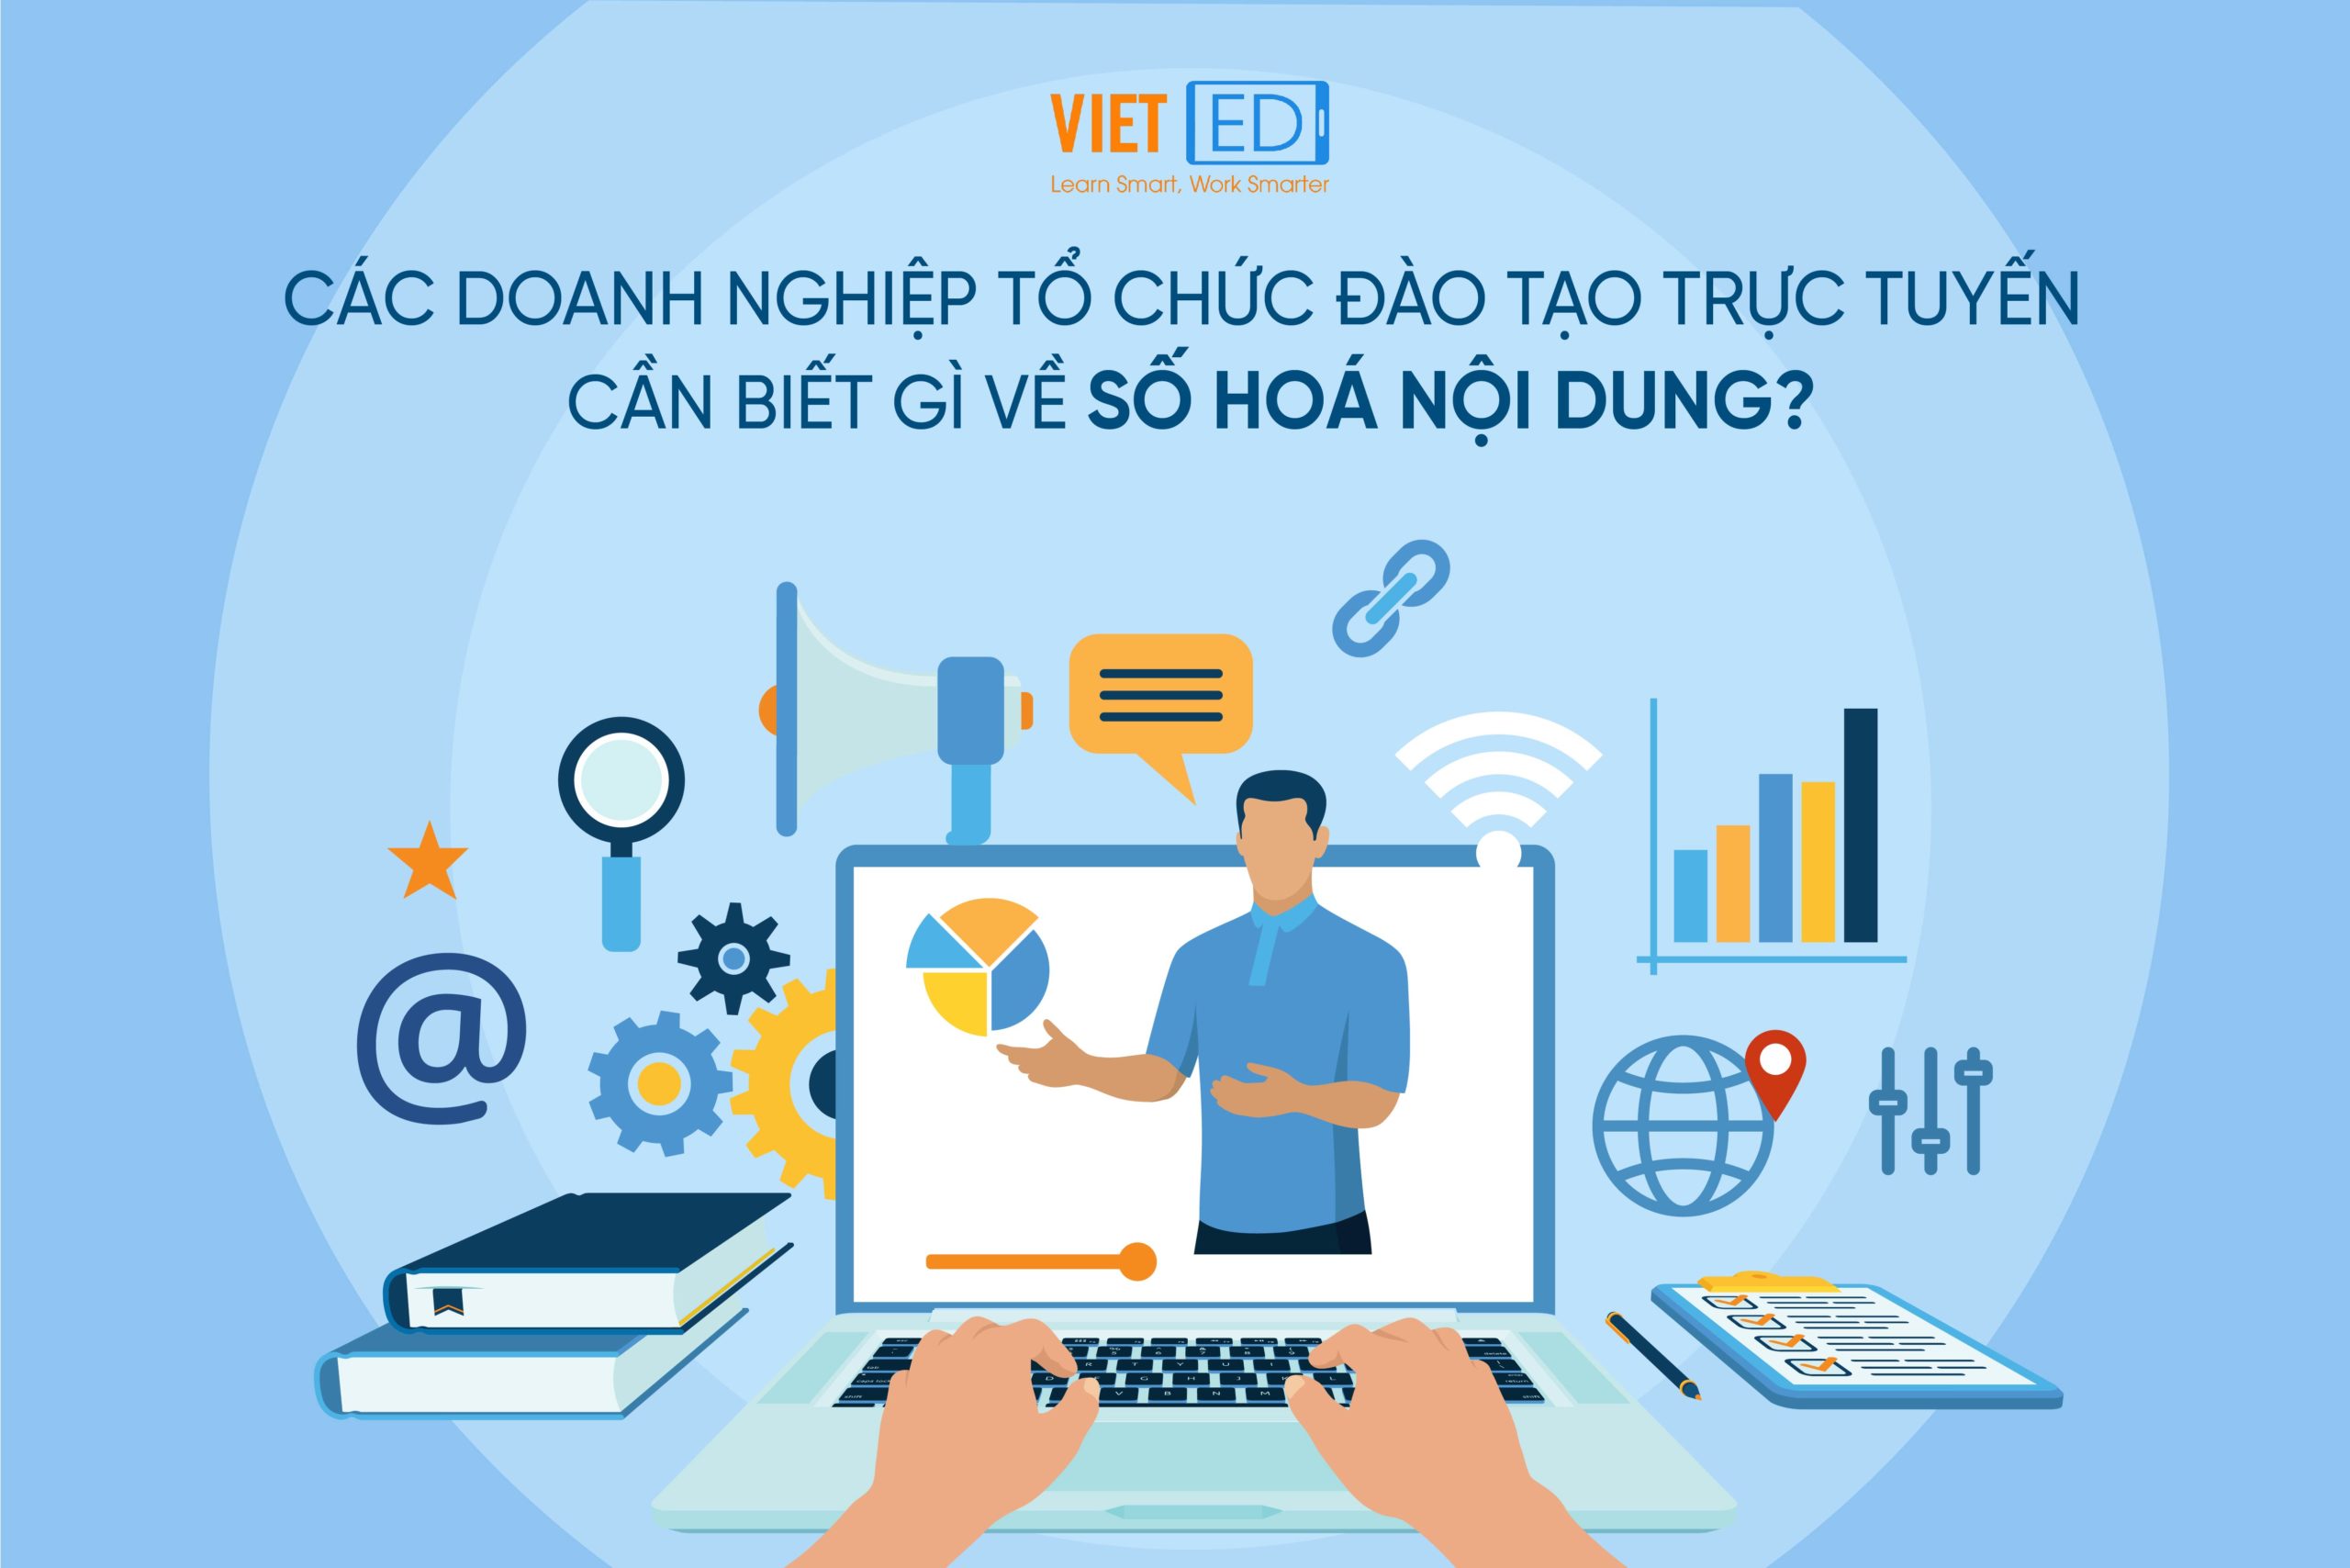 Đào tạo trực tuyến hướng tới xây dựng các trường đại học số cơ sở giáo dục  số  Giáo dục Việt Nam